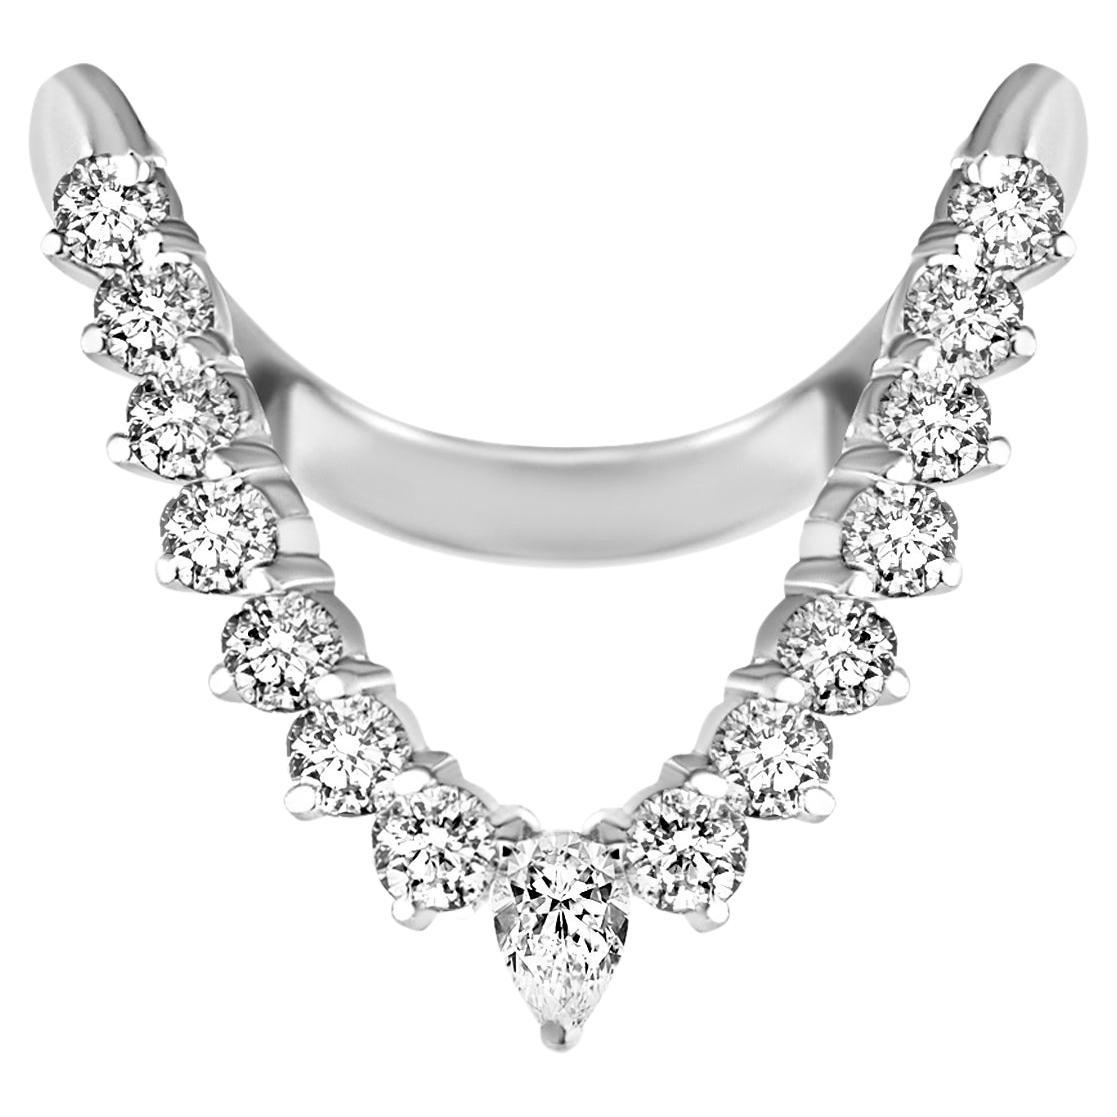 Vanki Diamond Ring - Fully Studded For Sale